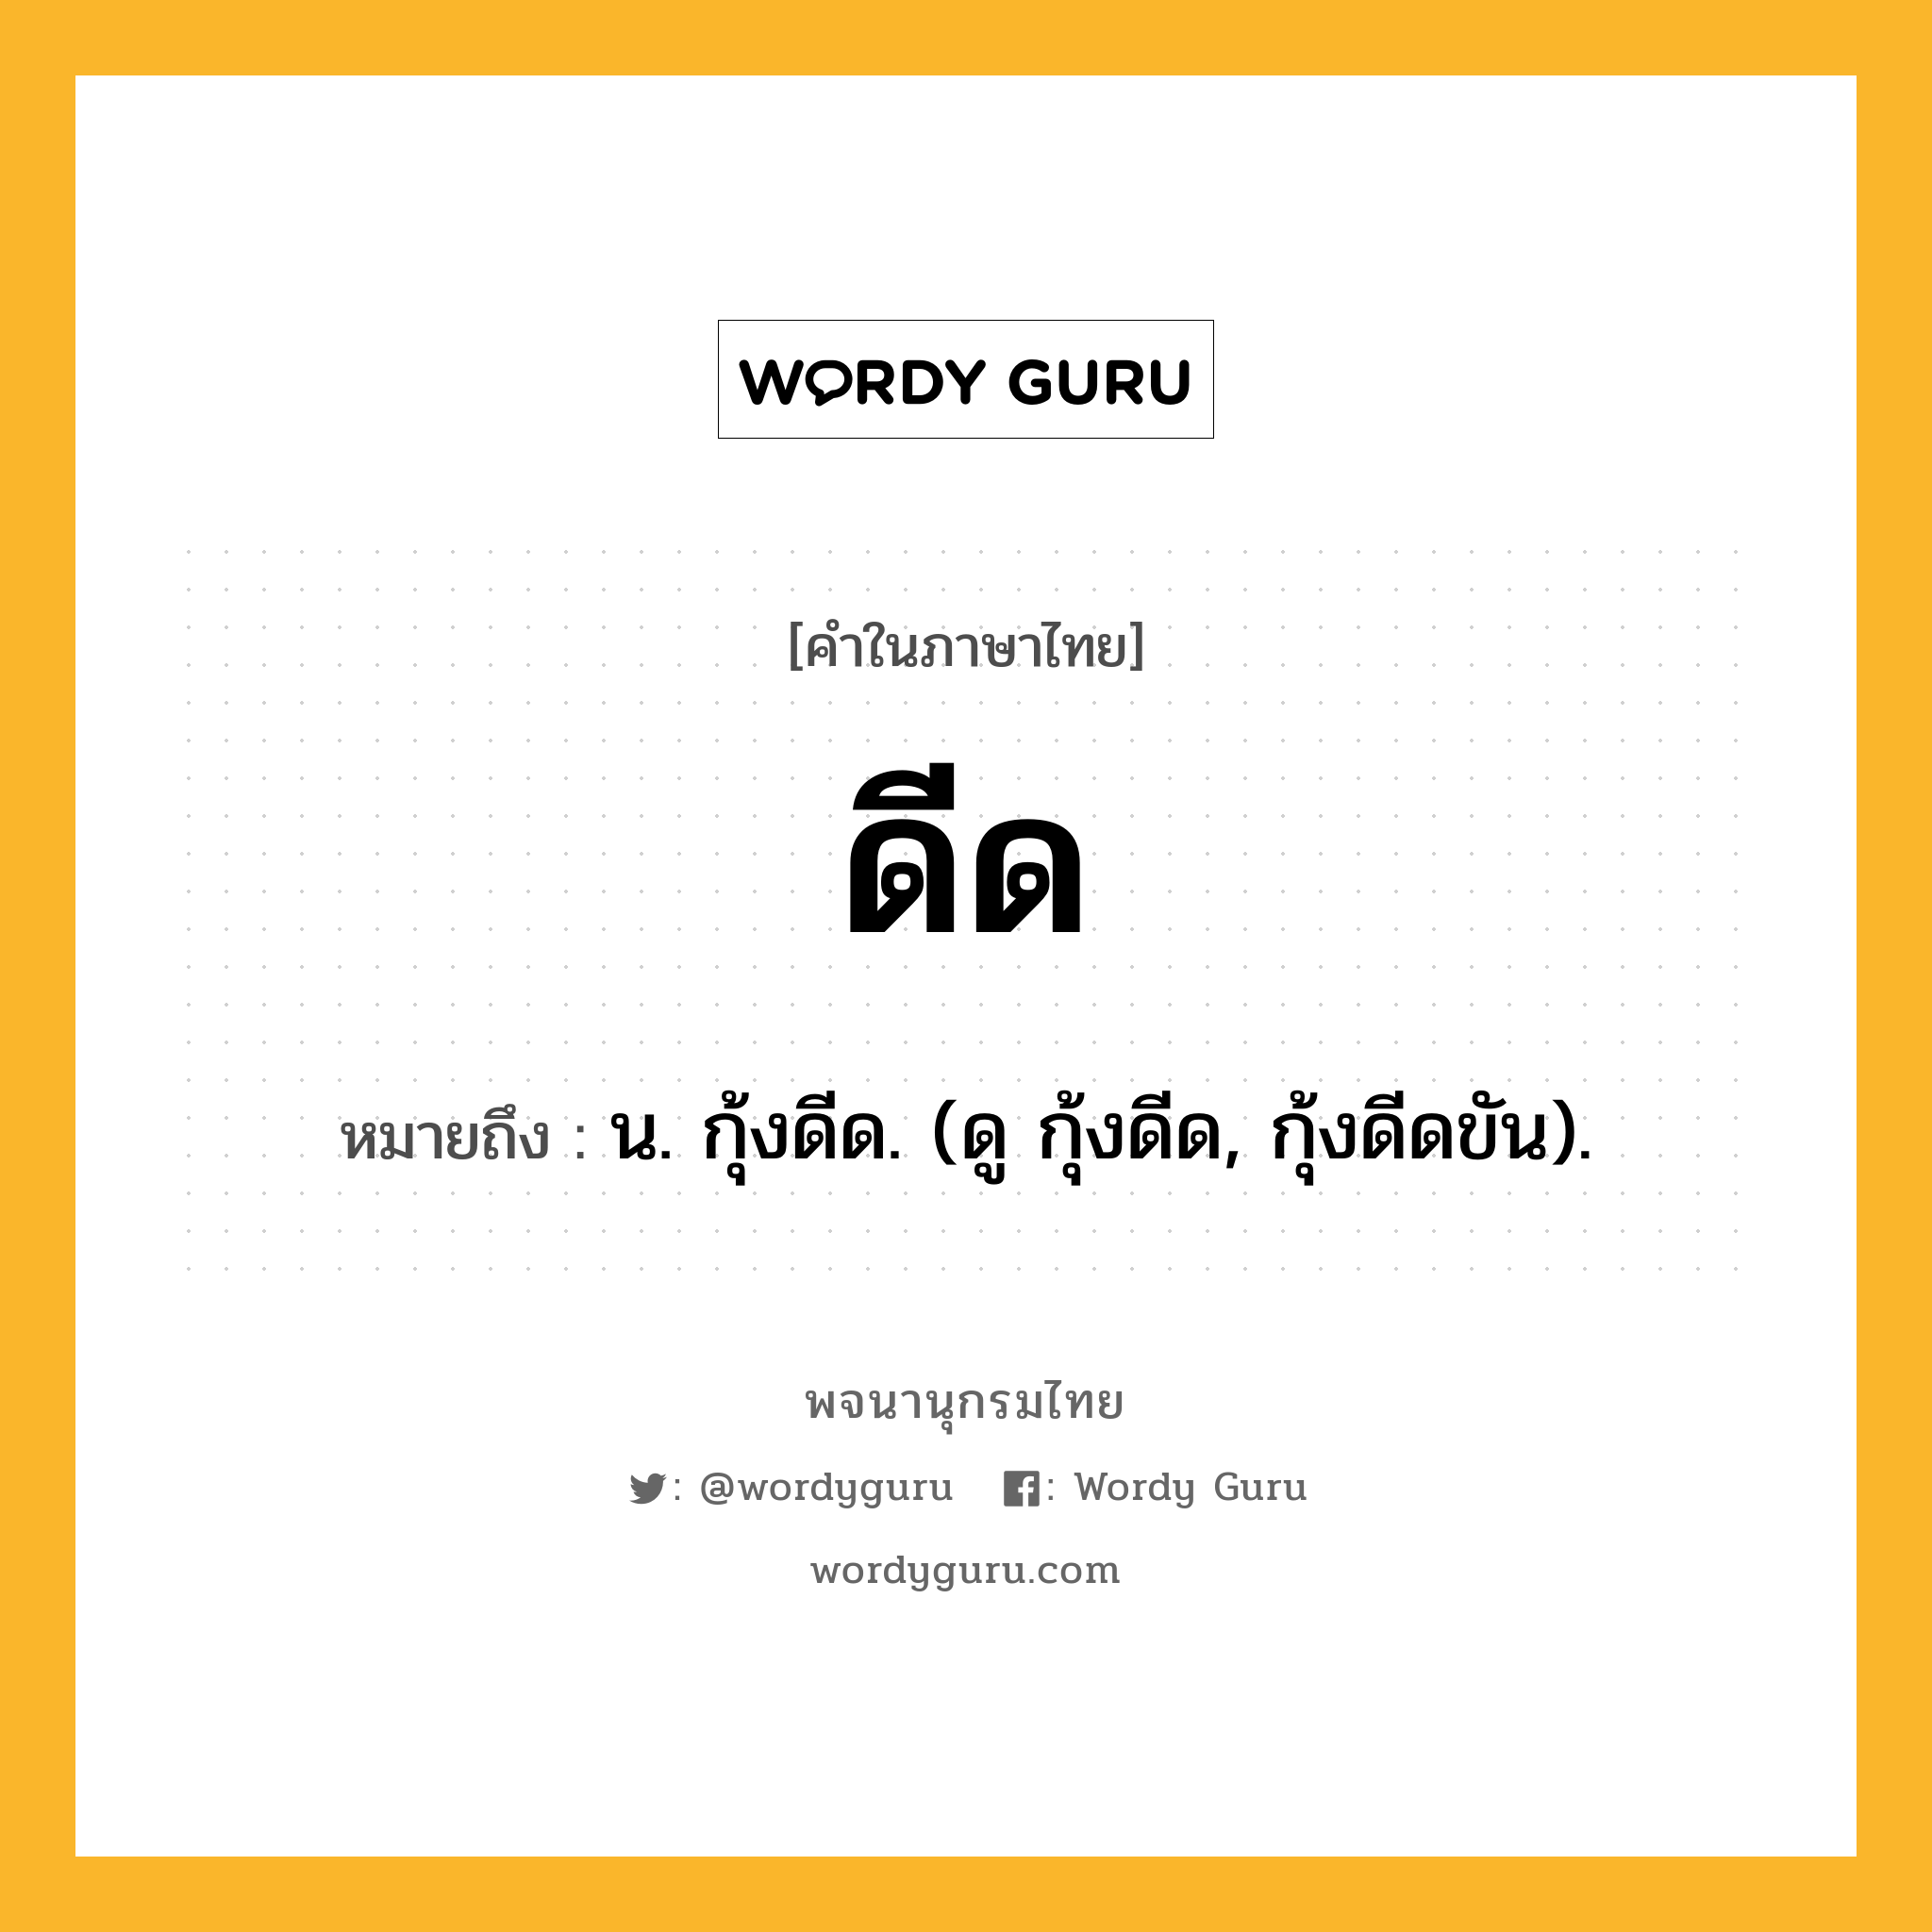 ดีด หมายถึงอะไร?, คำในภาษาไทย ดีด หมายถึง น. กุ้งดีด. (ดู กุ้งดีด, กุ้งดีดขัน).